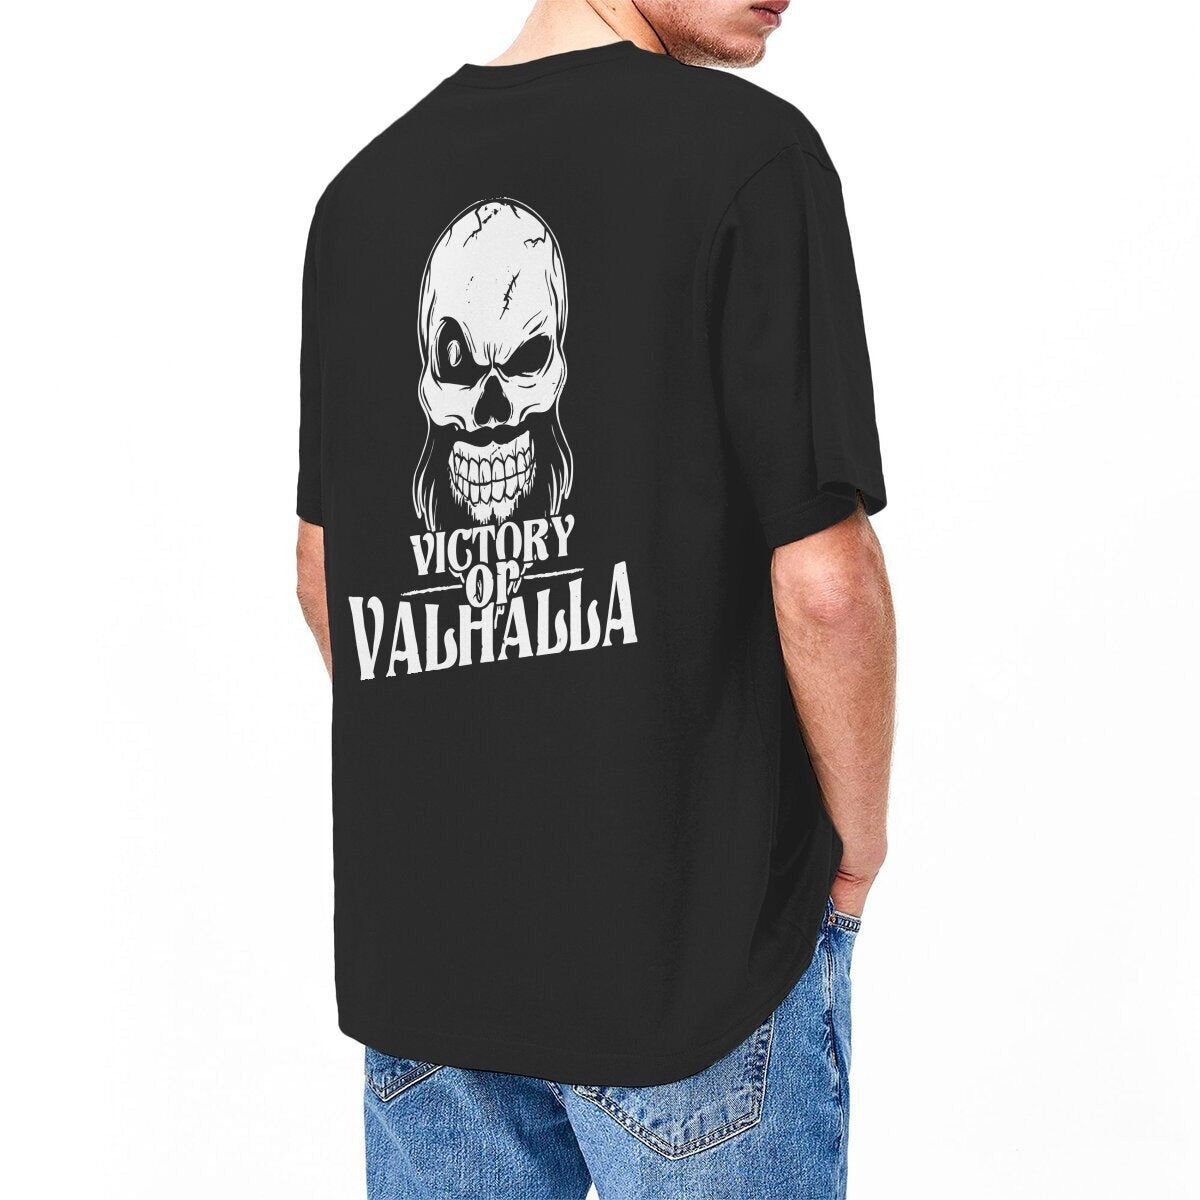 T-shirt Viking Valhalla Et Tête de Mort